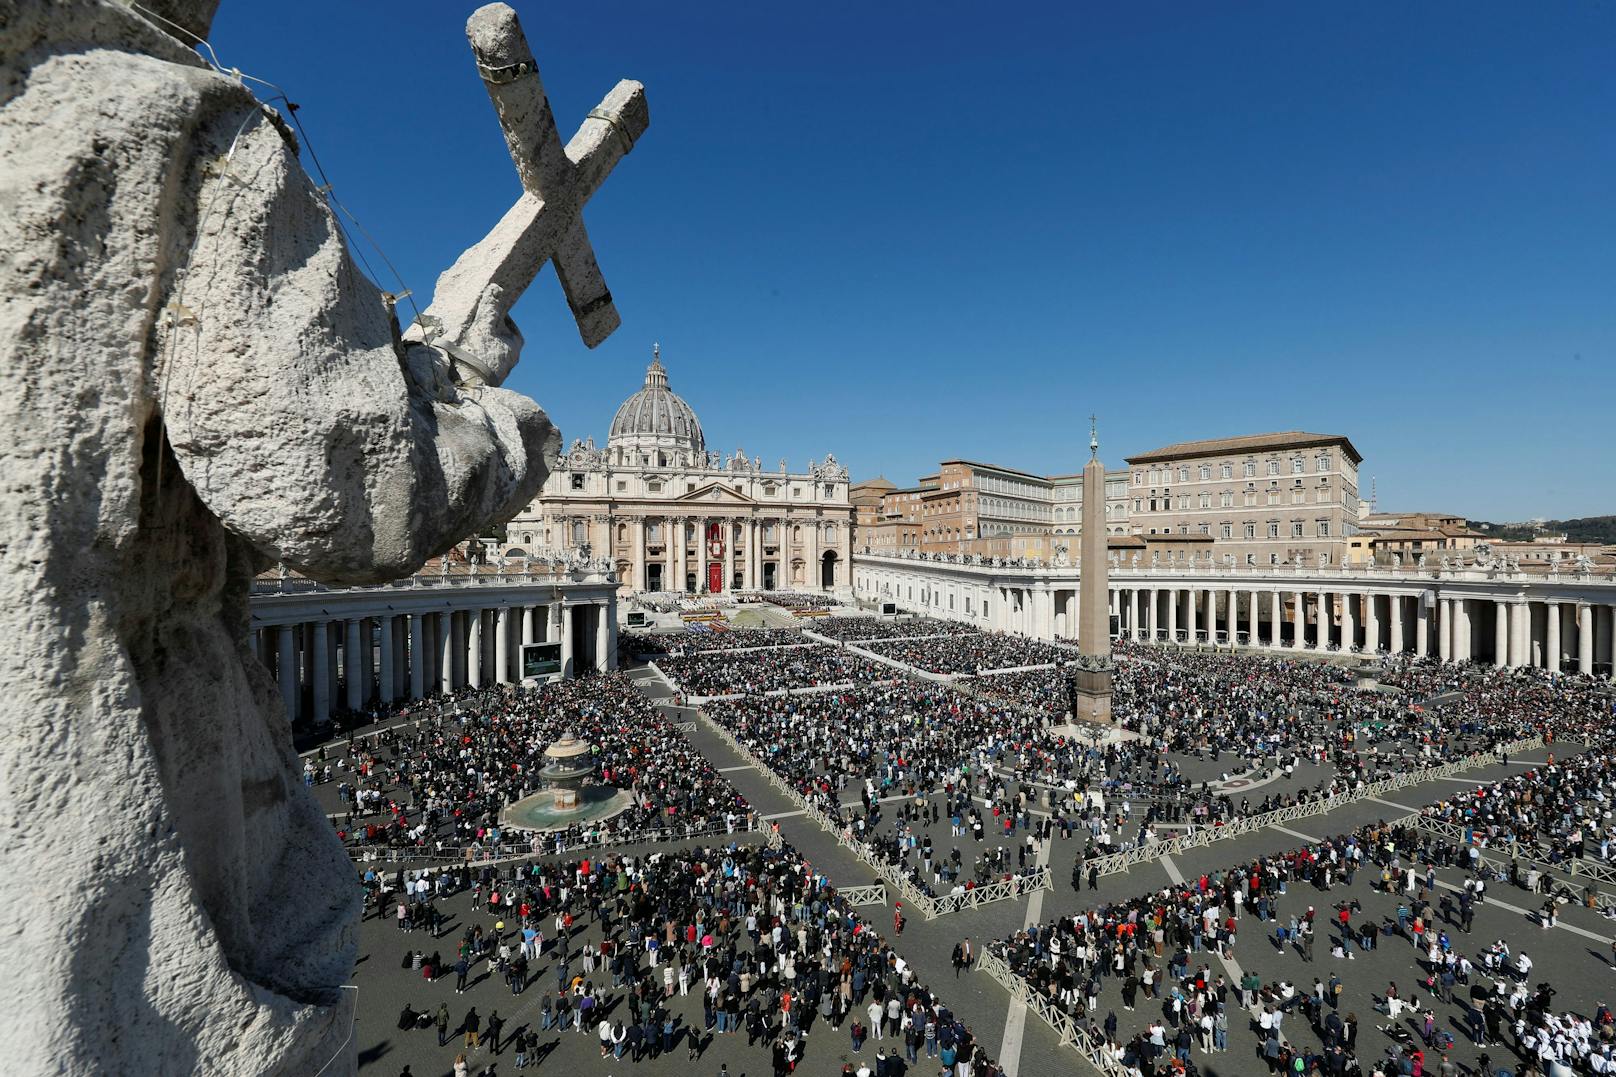 Rund um die Osterfeierlichkeiten sind in Rom strengste Sicherheitsvorkehrungen in Kraft. Anti-Terror-Einheiten und Spezialkräfte der Polizei überwachen das Gelände rund um den Vatikan.